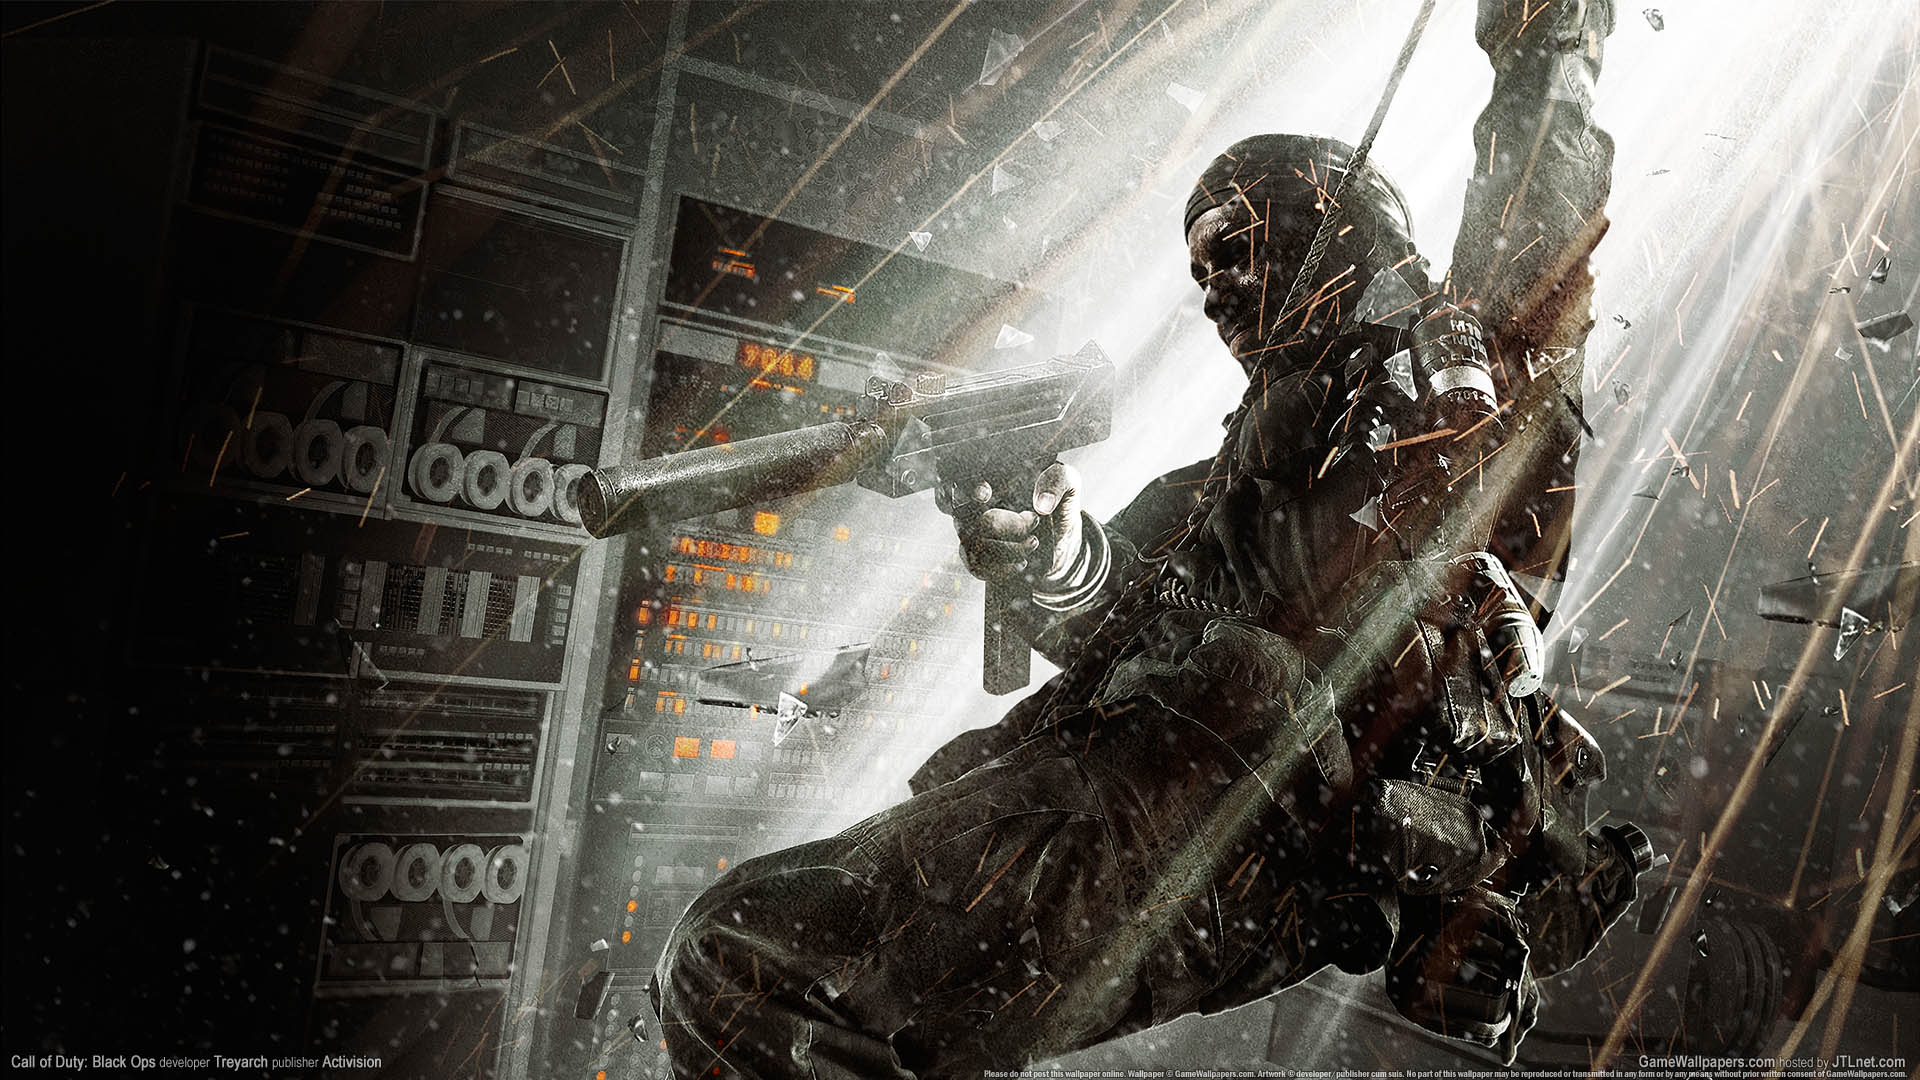 Call of Duty: Black Ops fond d'cran 01 1920x1080